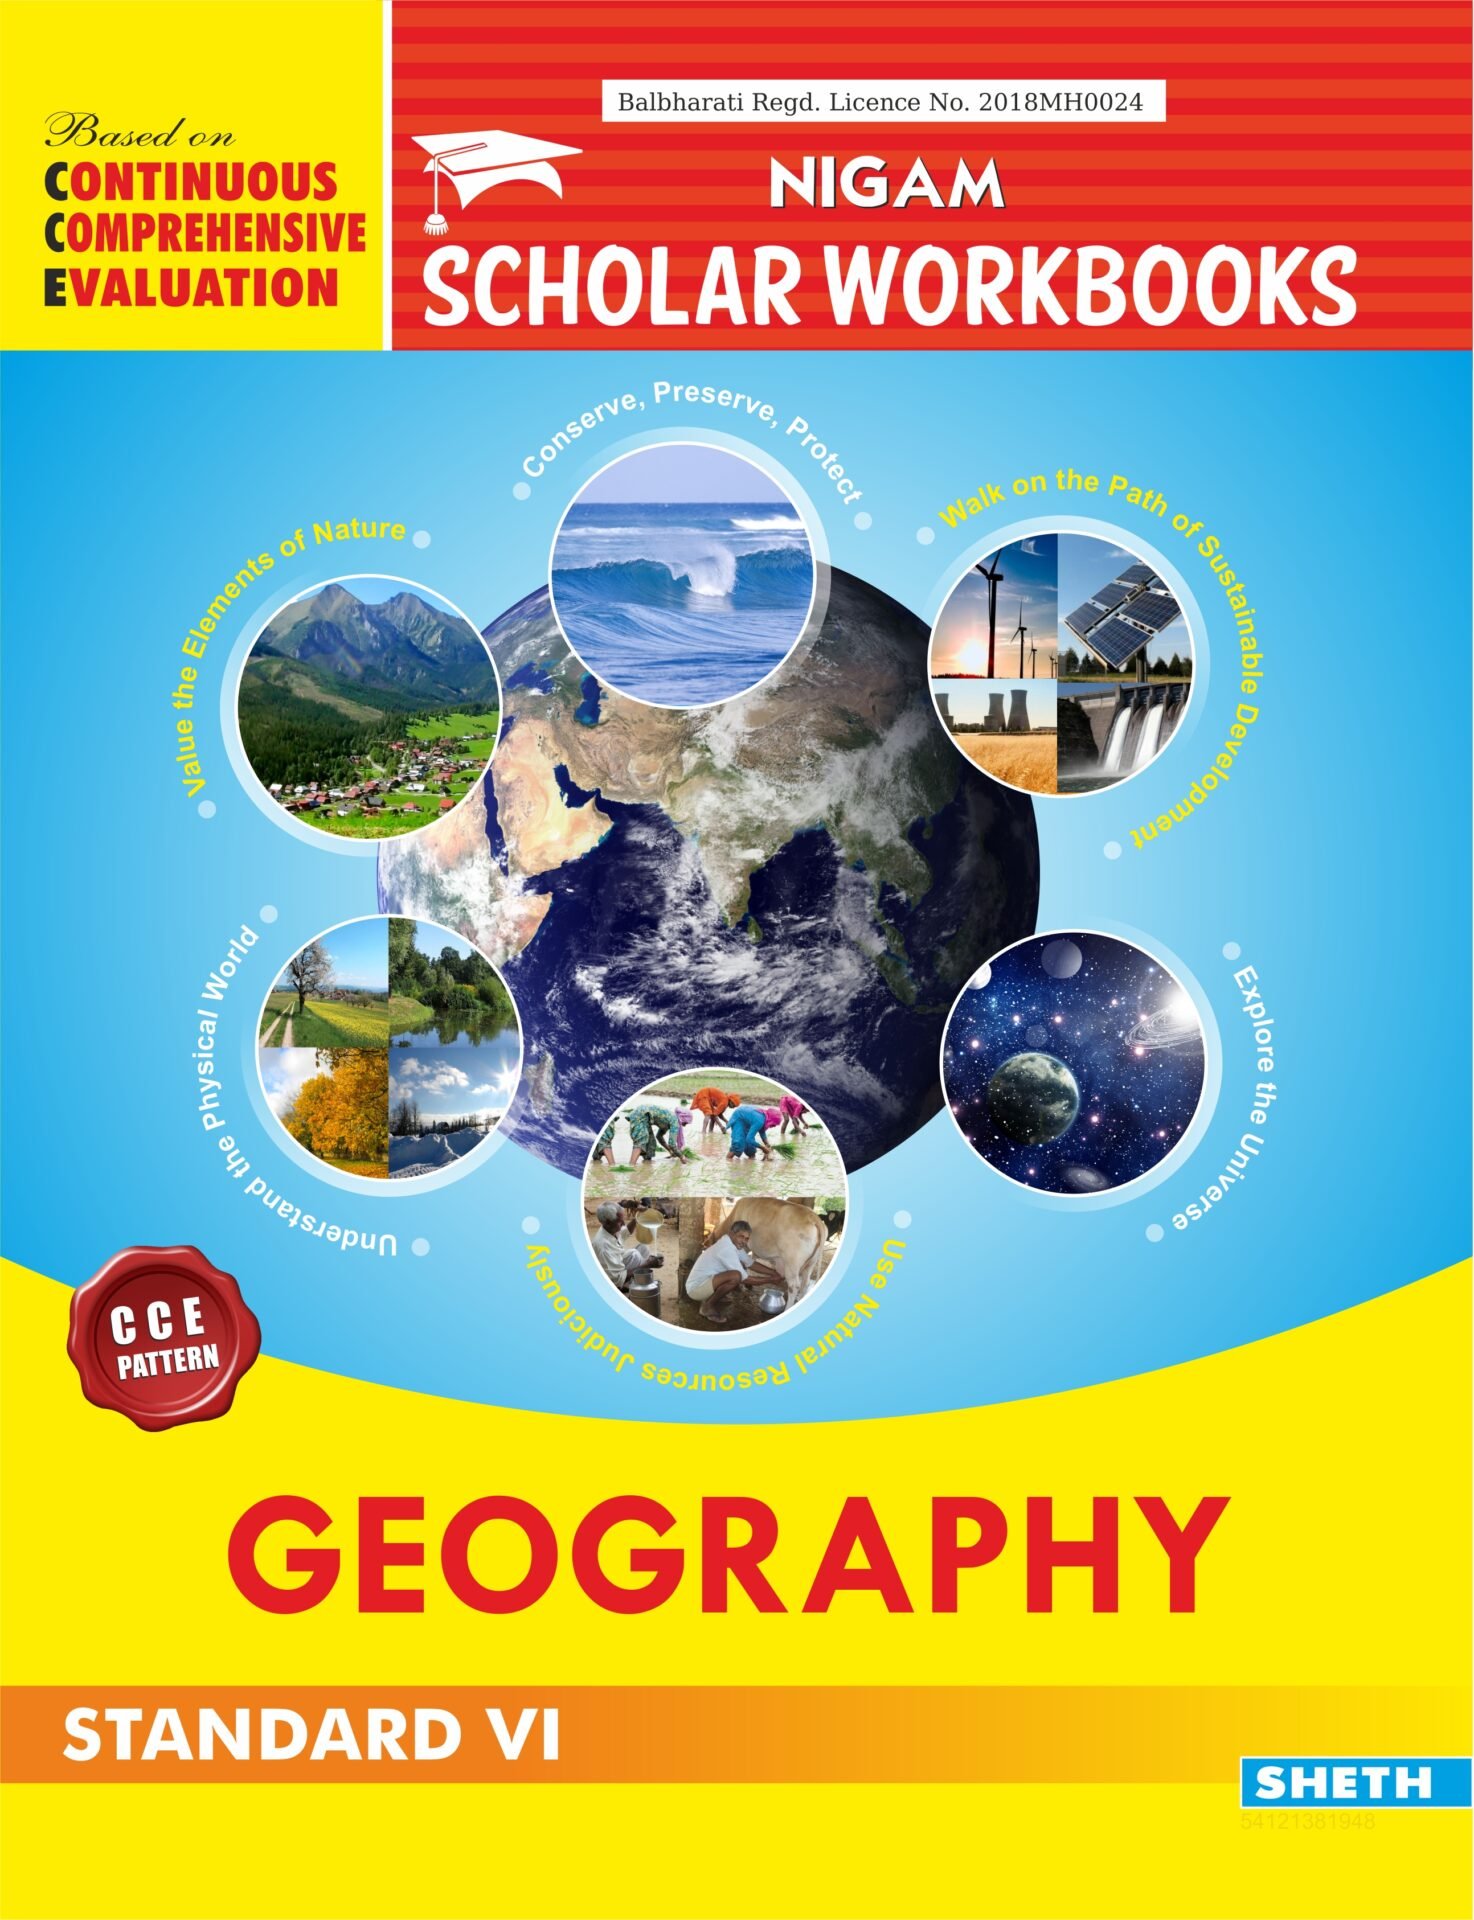 CCE Pattern Nigam Scholar Workbooks Geography Workbook Standard 6 1